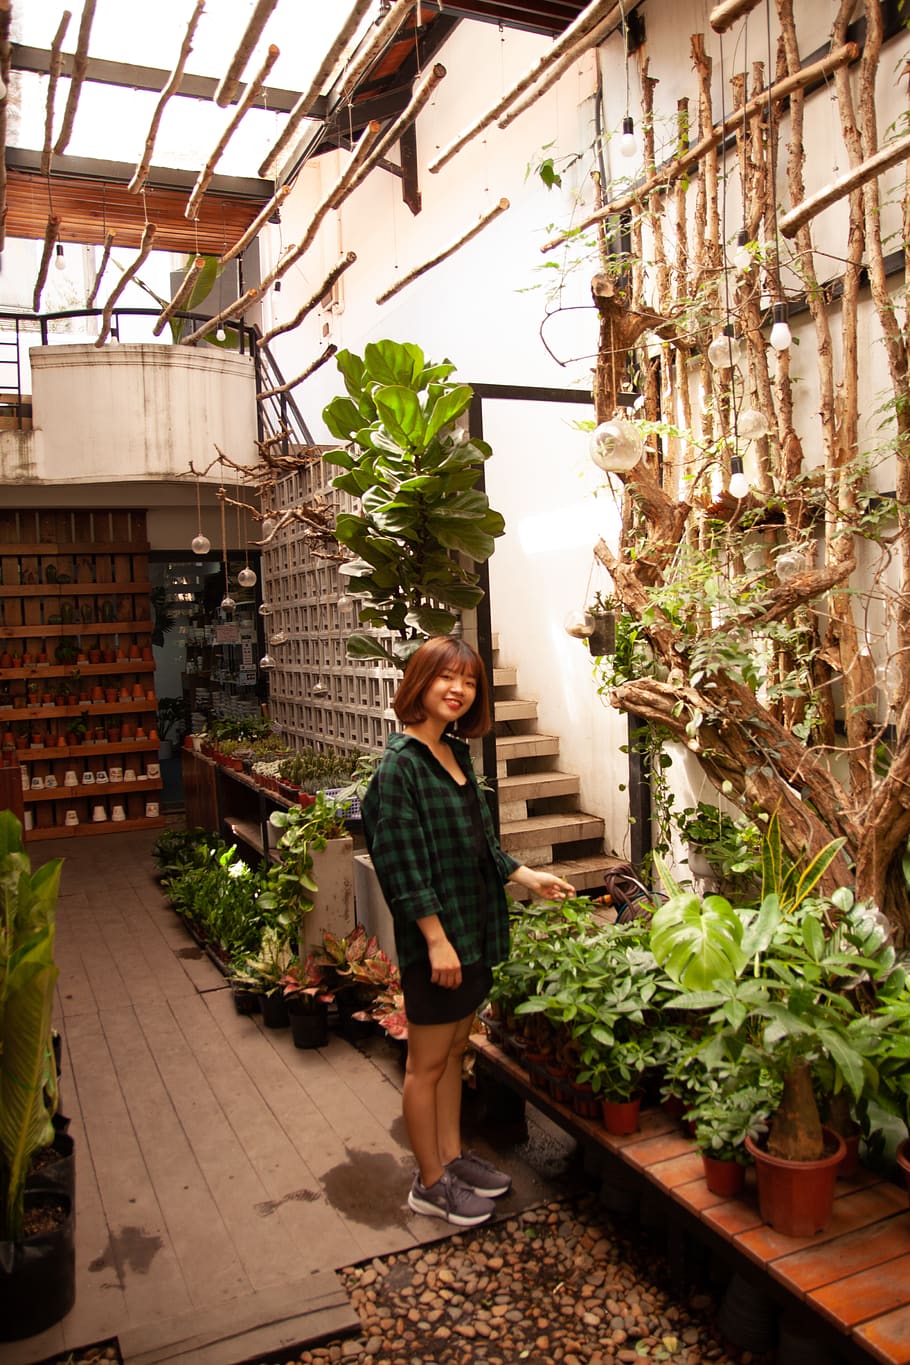 Woman Wearing Green Checkered Dress, beautiful, garden, greenhouse